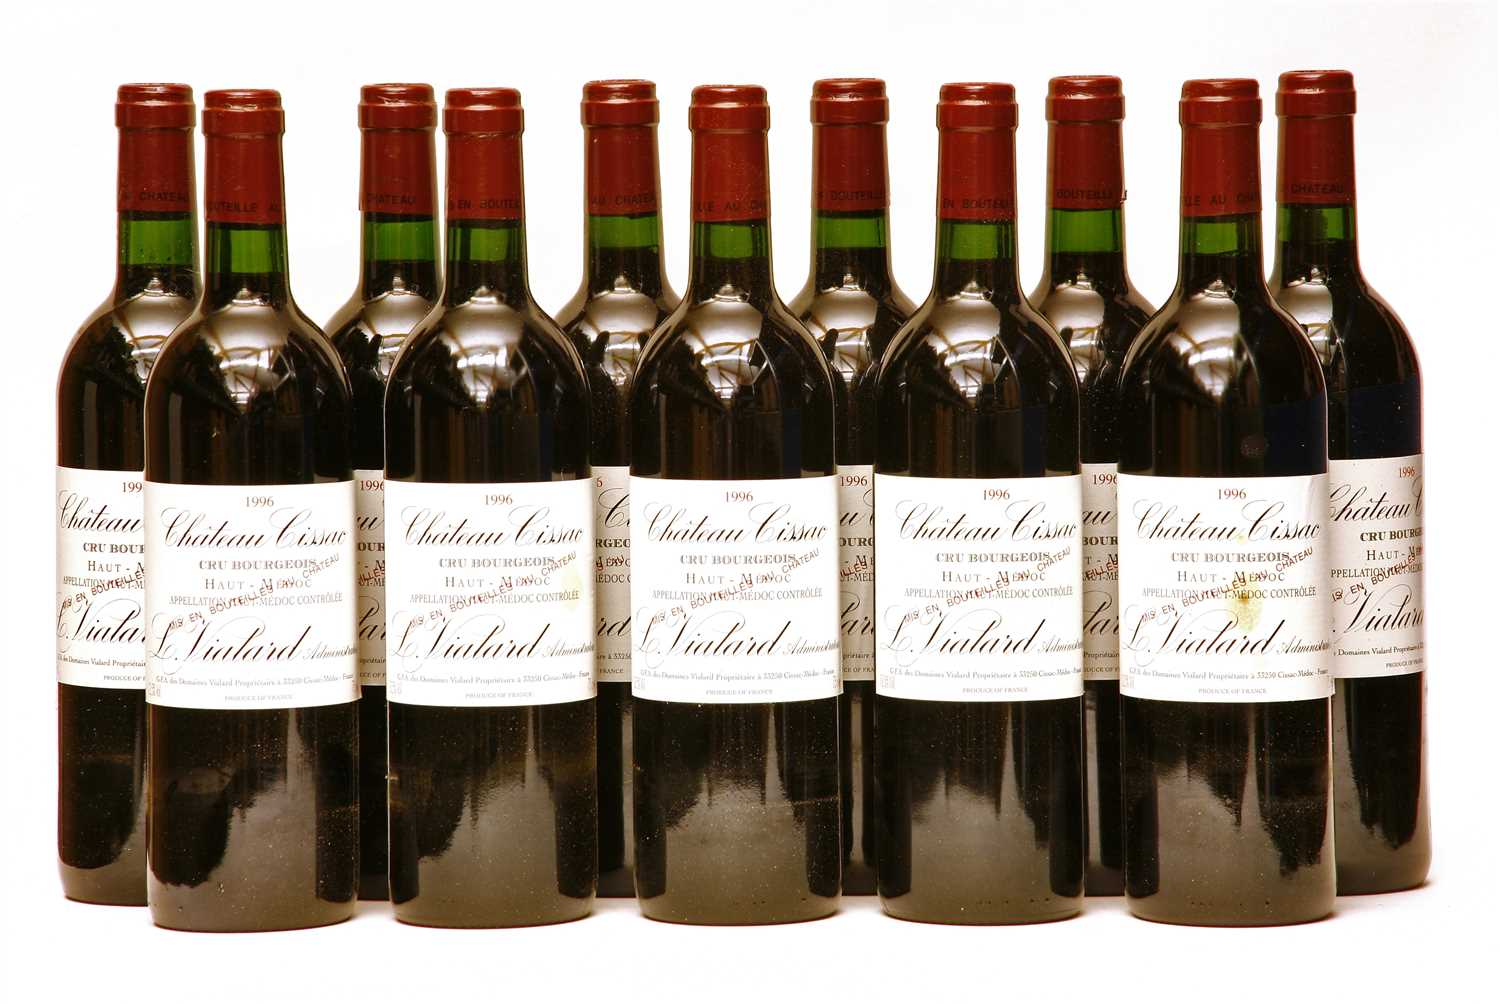 Lot 149 - Chateau Cissac, Haut-Médoc, Cru Bourgeois Supérieur, 1996, 11 bottles (owc)